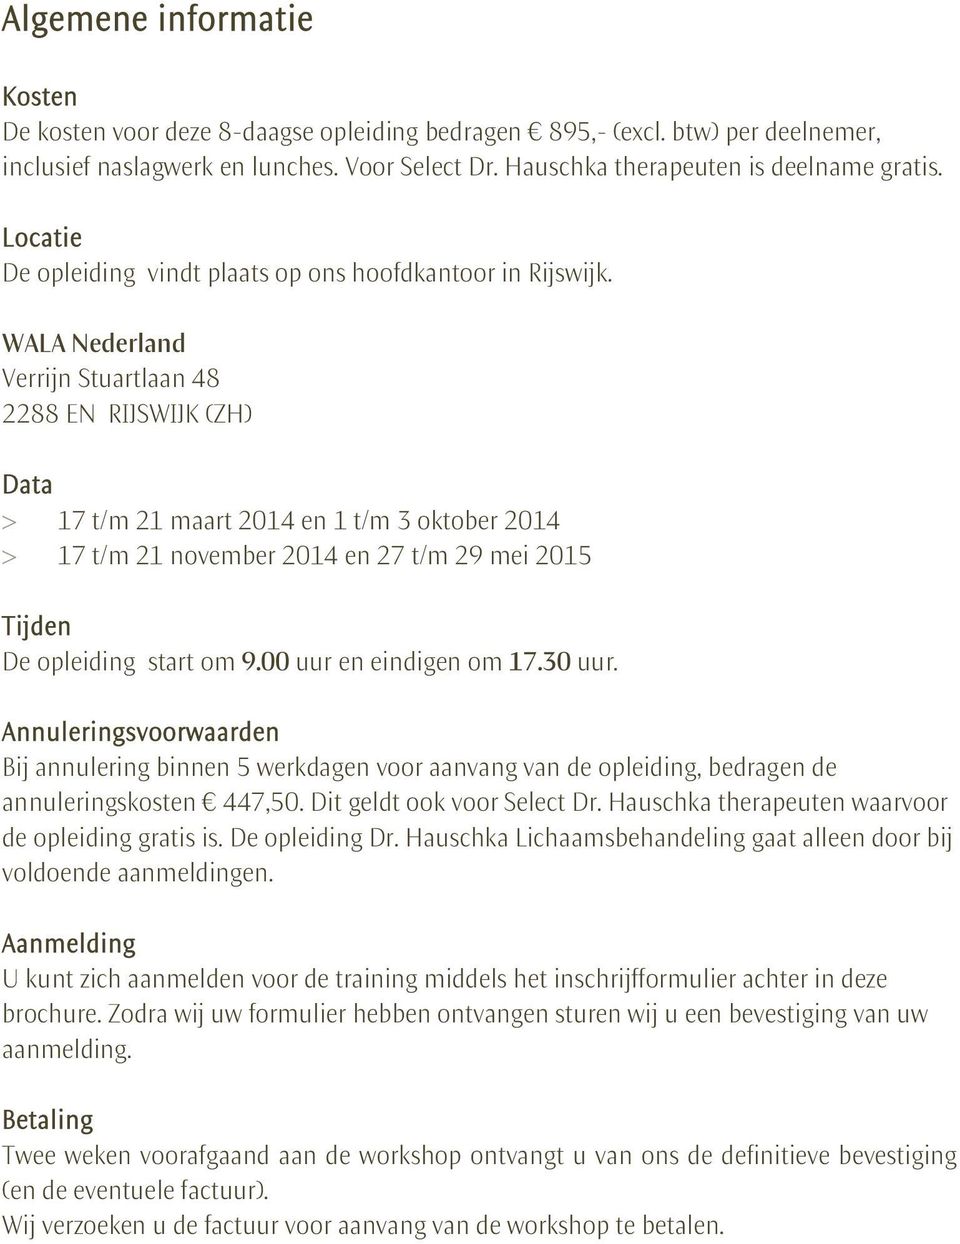 WALA Nederland Verrijn Stuartlaan 48 2288 EN RIJSWIJK (ZH) Data > 17 t/m 21 maart 2014 en 1 t/m 3 oktober 2014 > 17 t/m 21 november 2014 en 27 t/m 29 mei 2015 Tijden De opleiding start om 9.